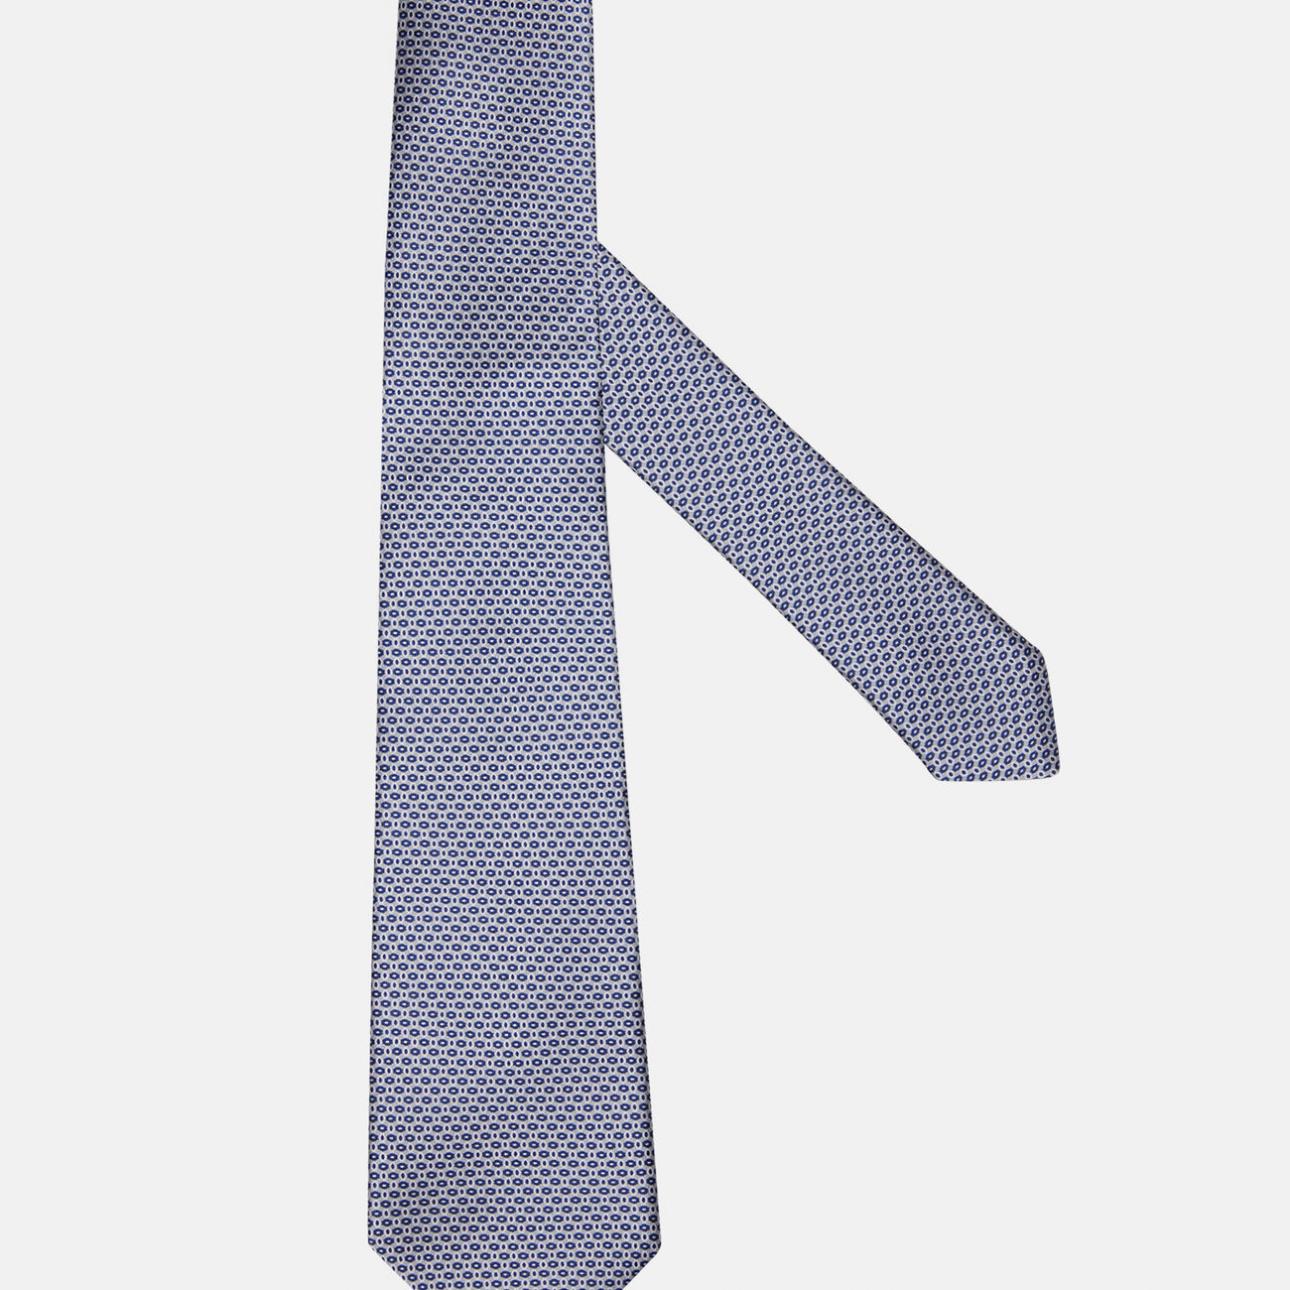 Boggi Uomo Accessori Cravatte e accessori Cravatte Cravatta Micro Design In Seta 